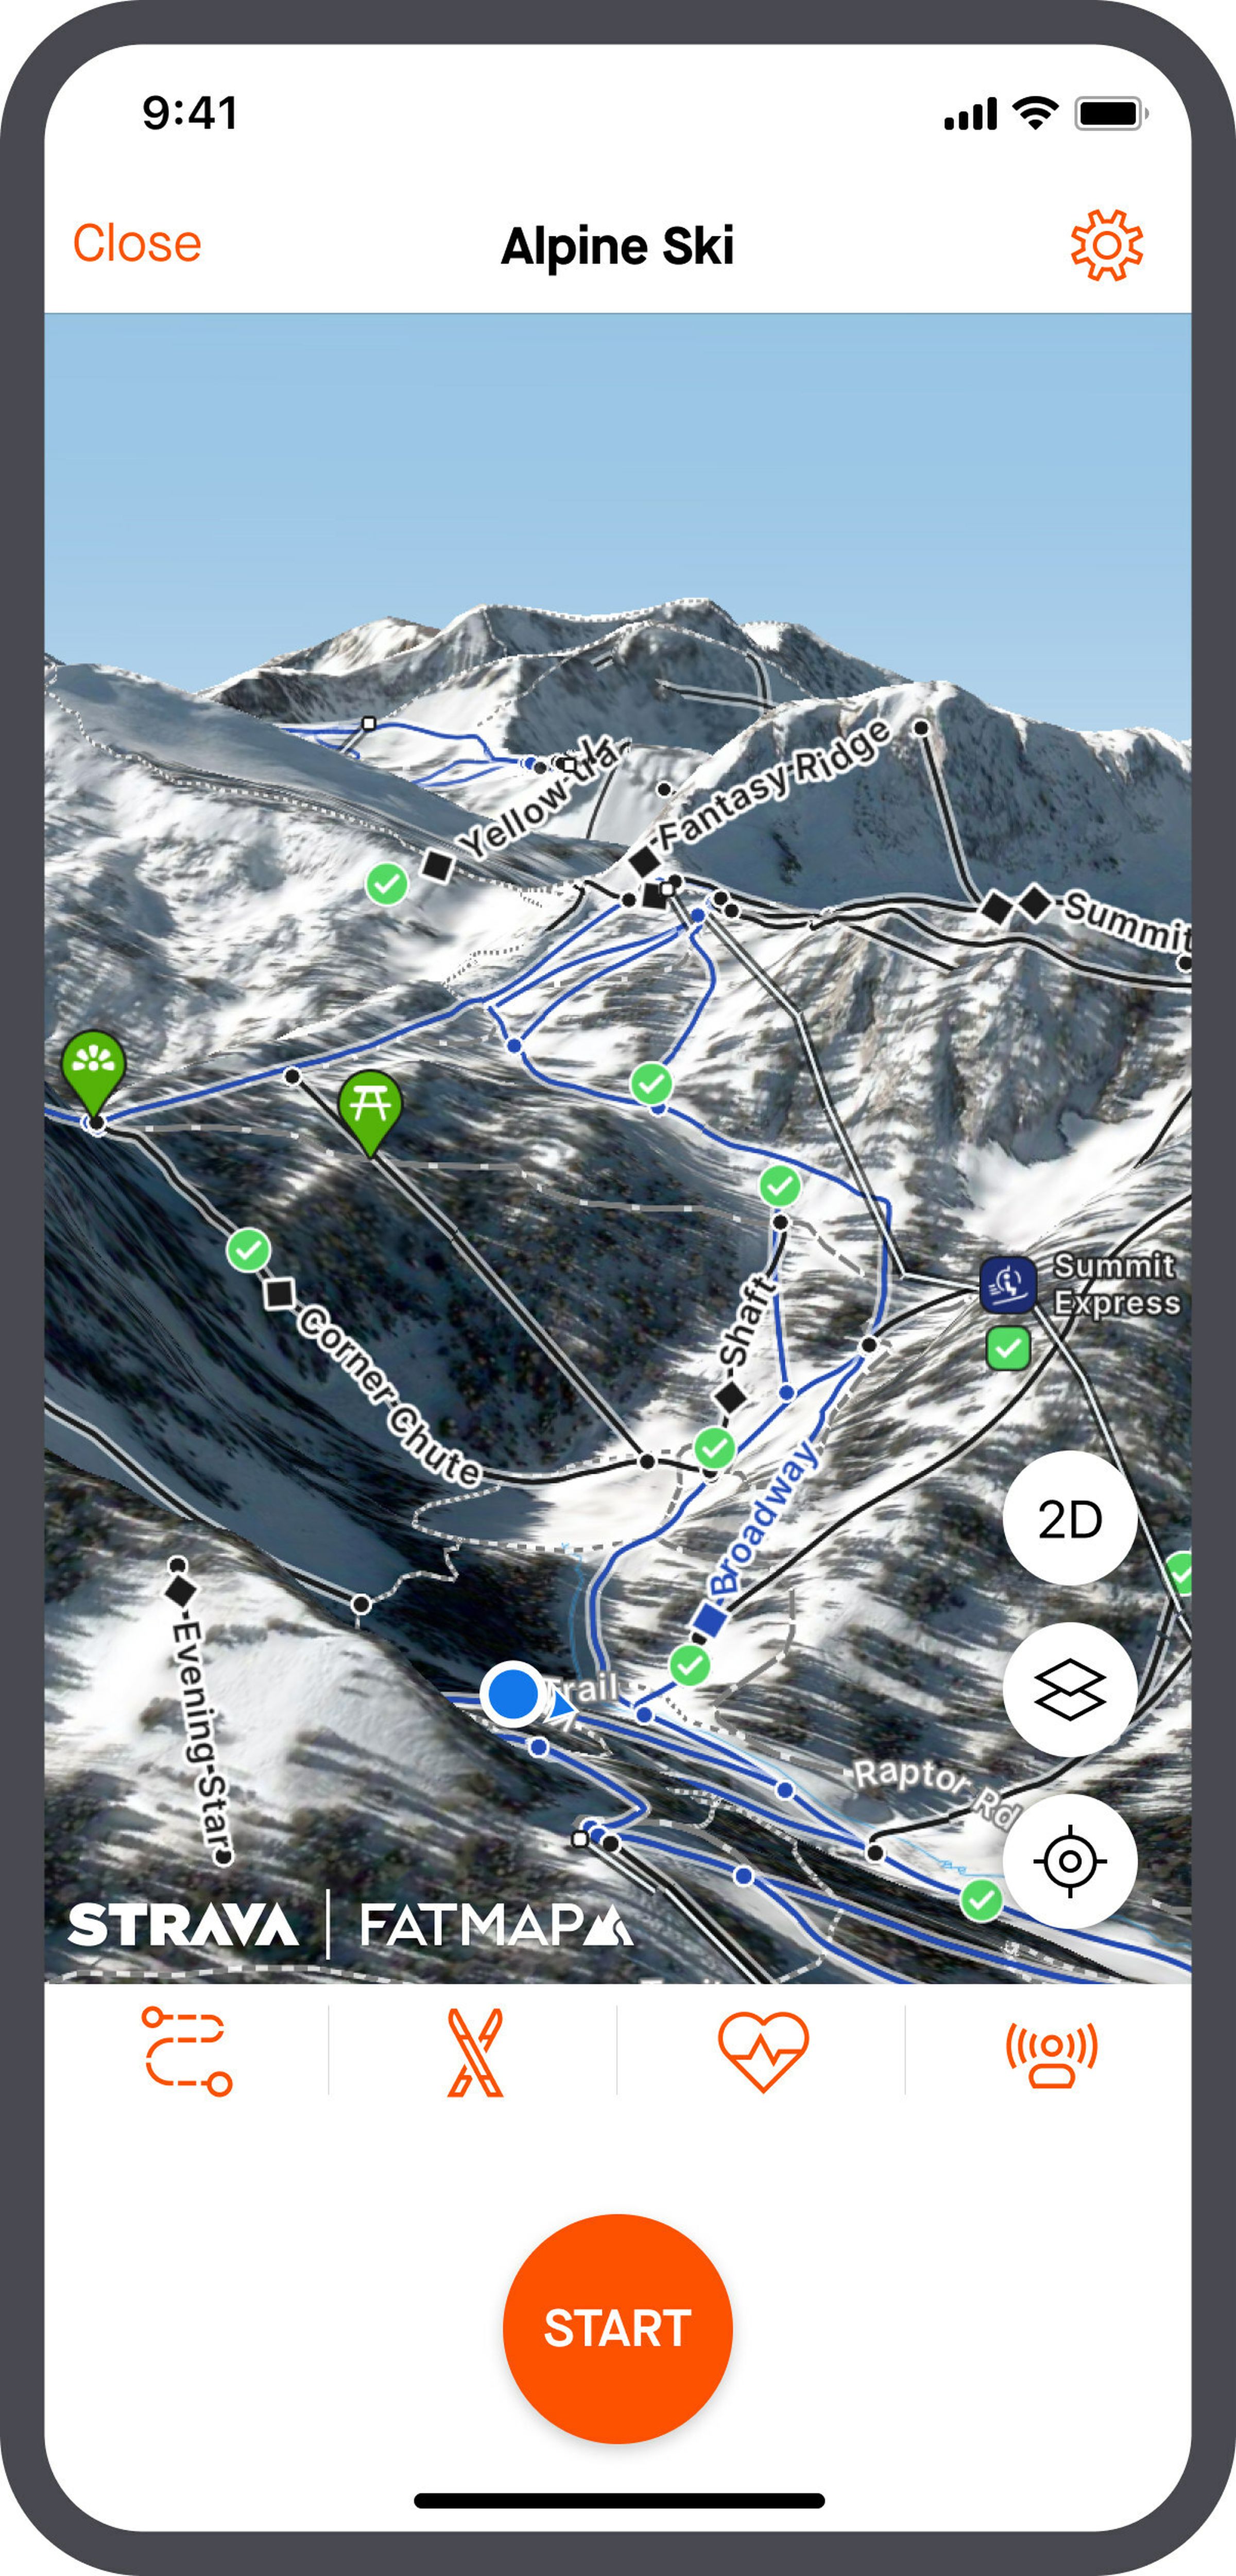 رندر یک نقشه سه بعدی اسکی آلپاین که نقاط مختلف دیدنی را در برنامه Strava نشان می دهد.